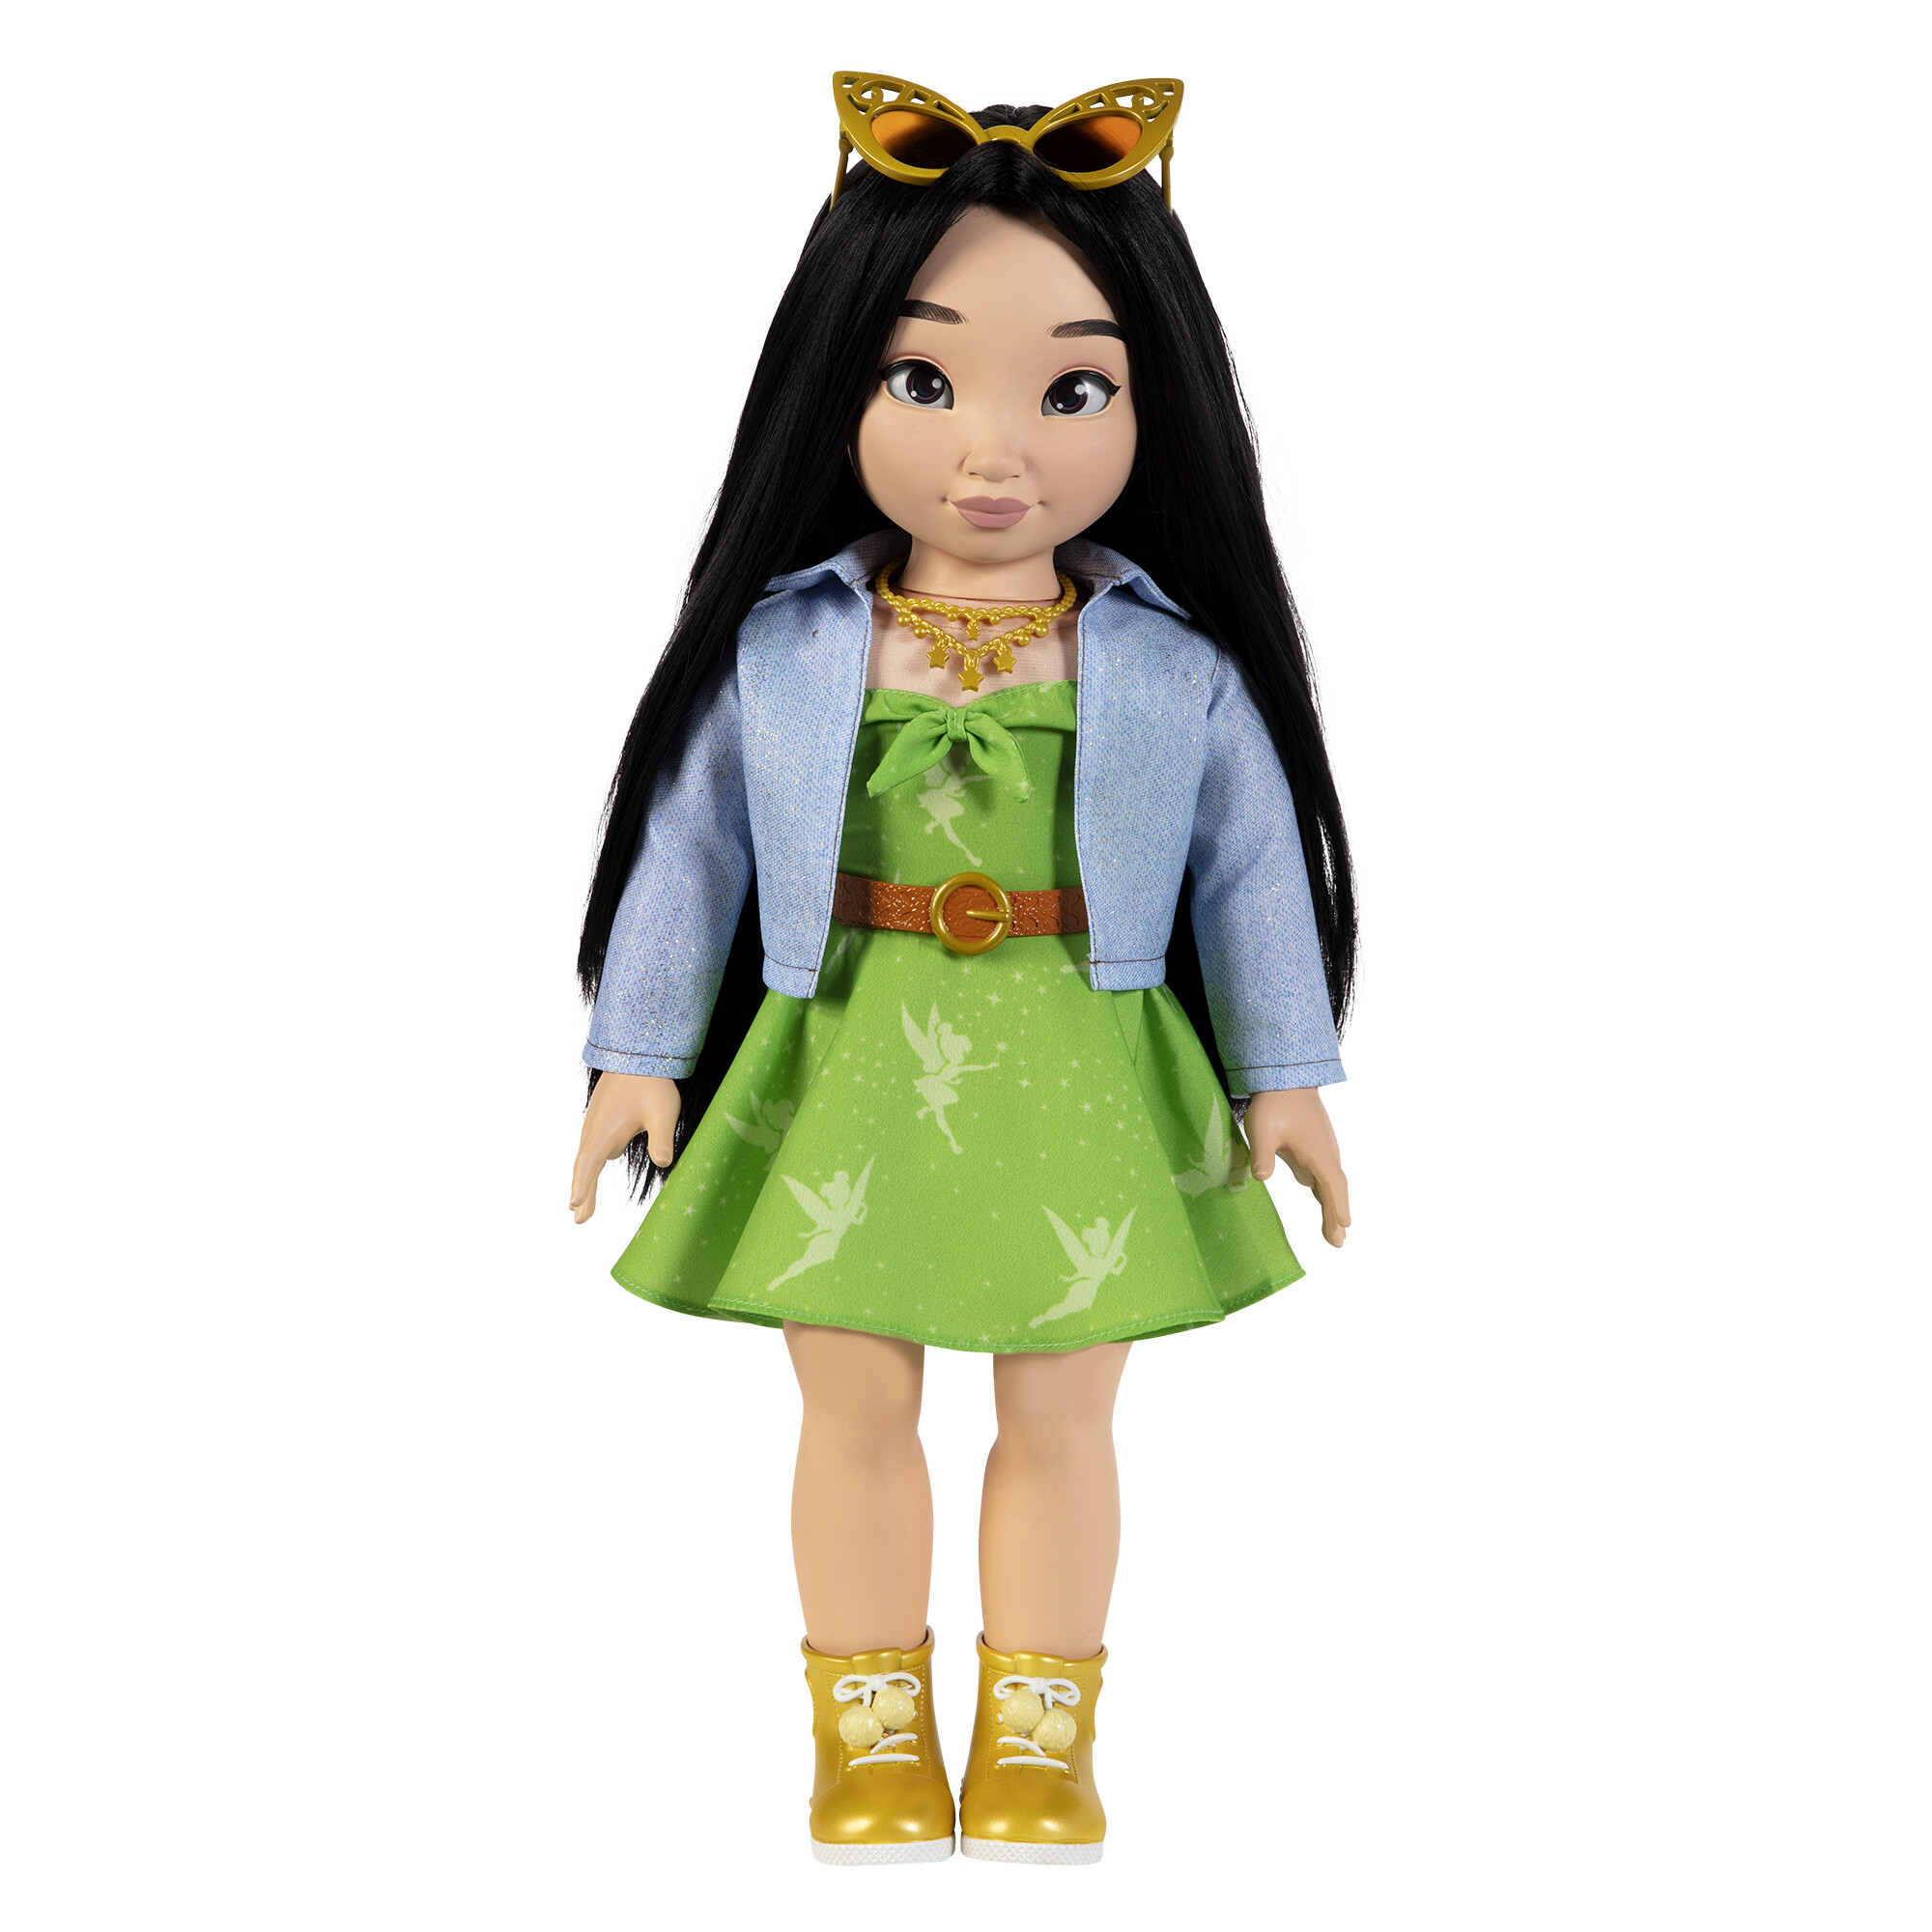 Disney ily 4ever bambola 46 cm ispirata a trilly con capelli lunghi e accessori - 